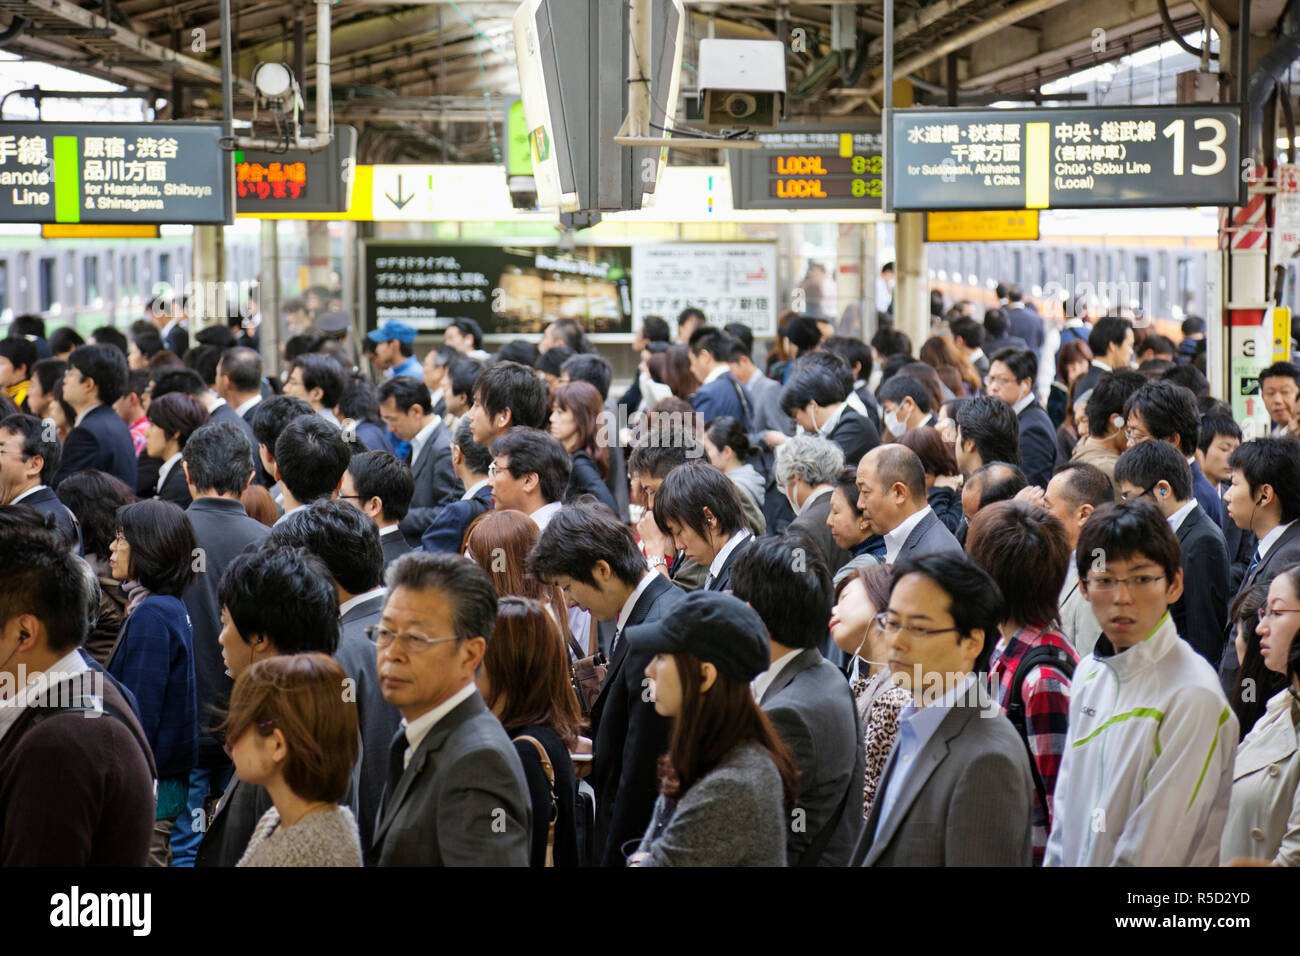 Japan Tokyo Shinjuku Shinjuku Station Rush Hour Commuters Stock Photo Alamy